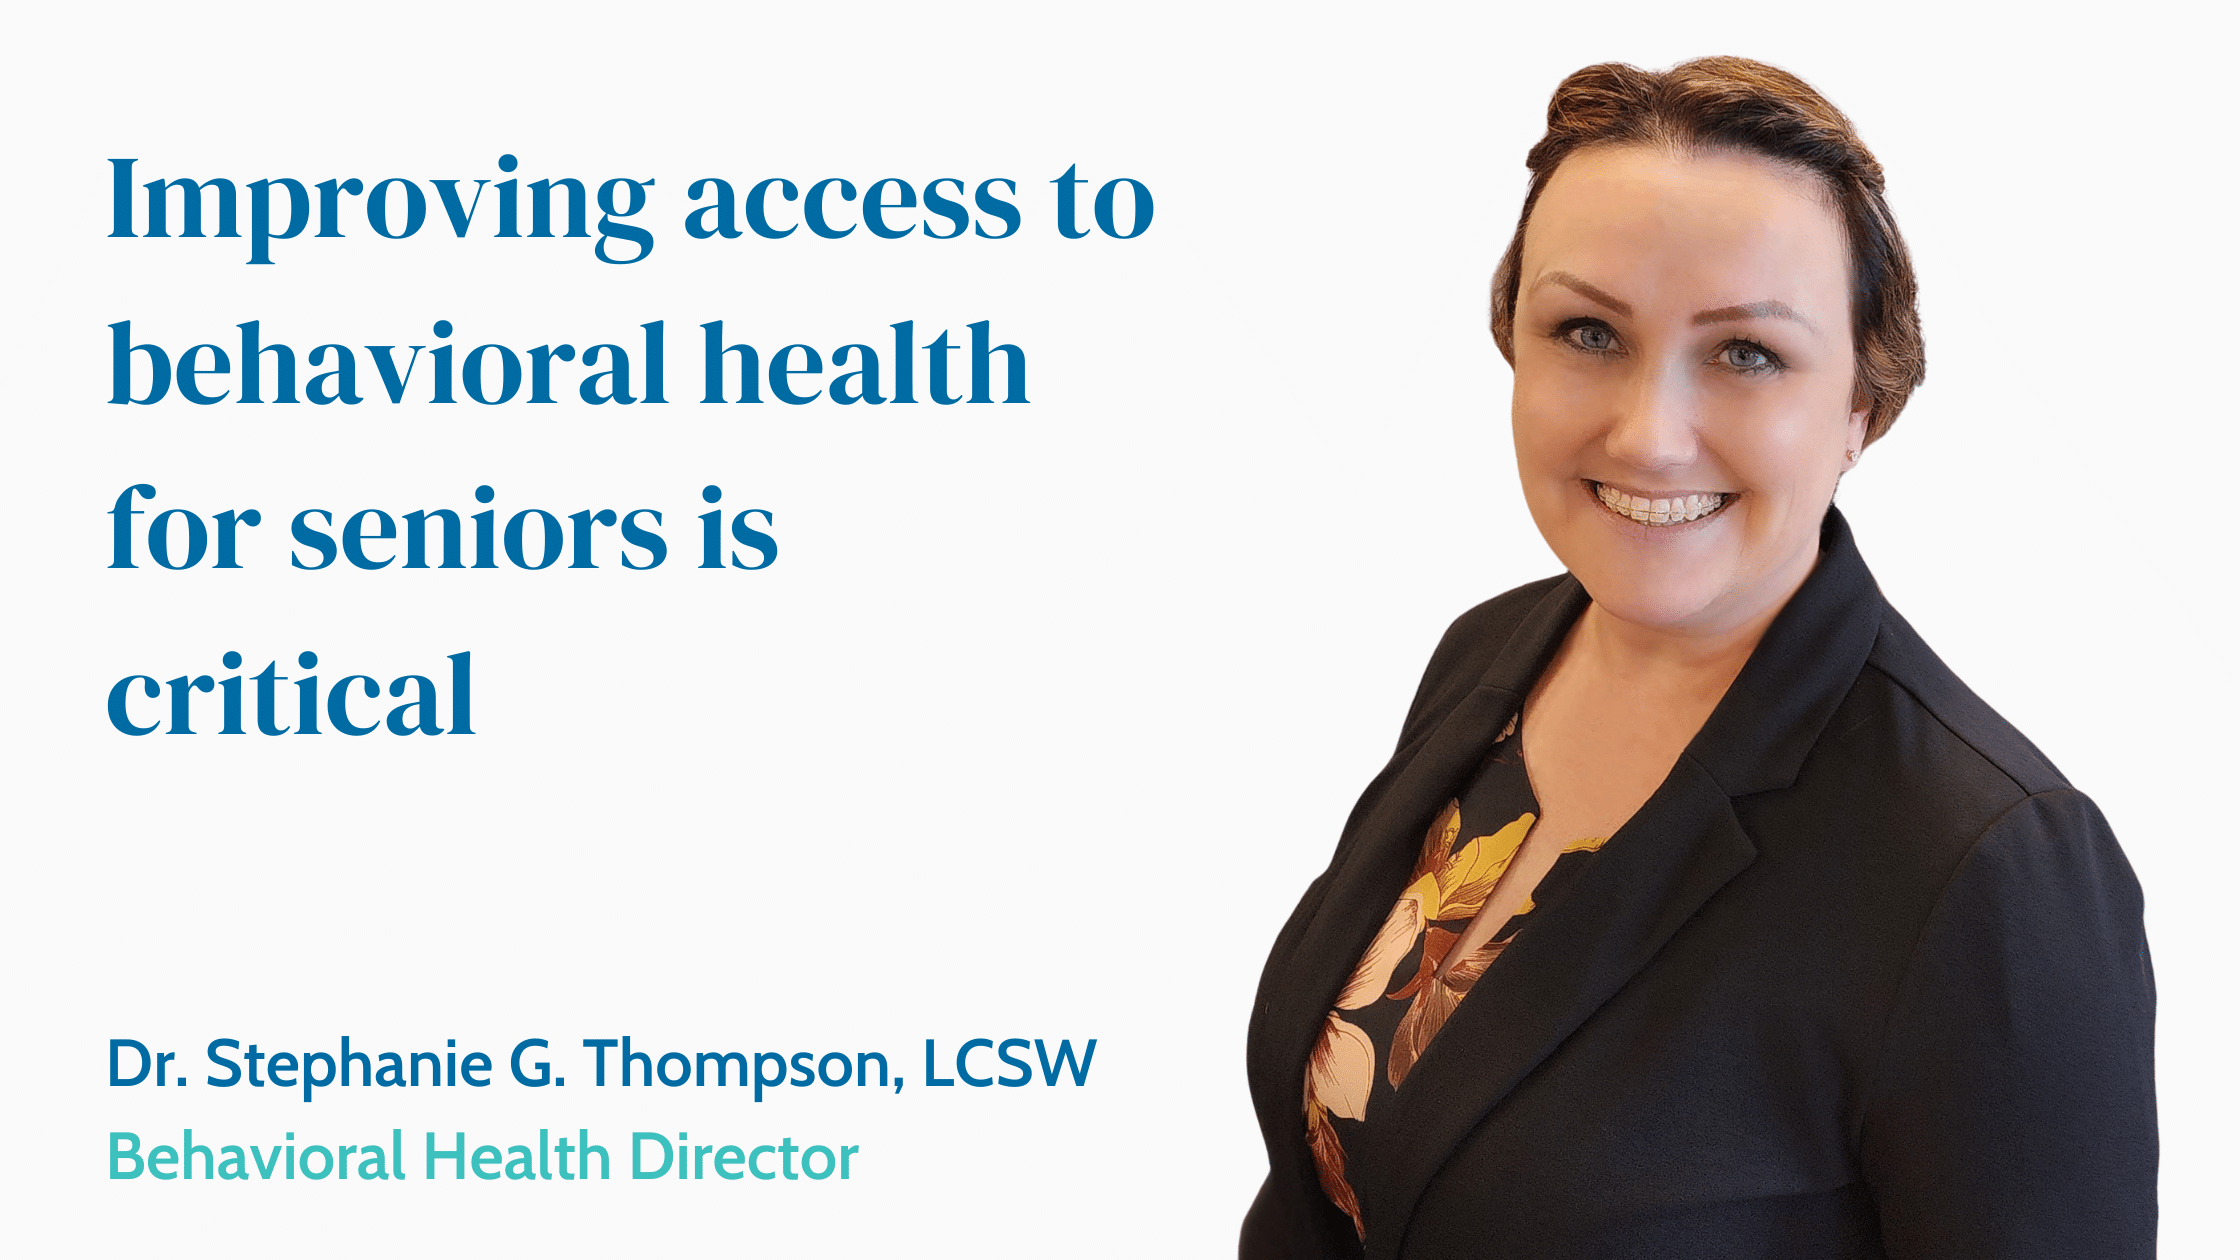 Dr. Stephanie Thompson, new Behavioural Health Director.